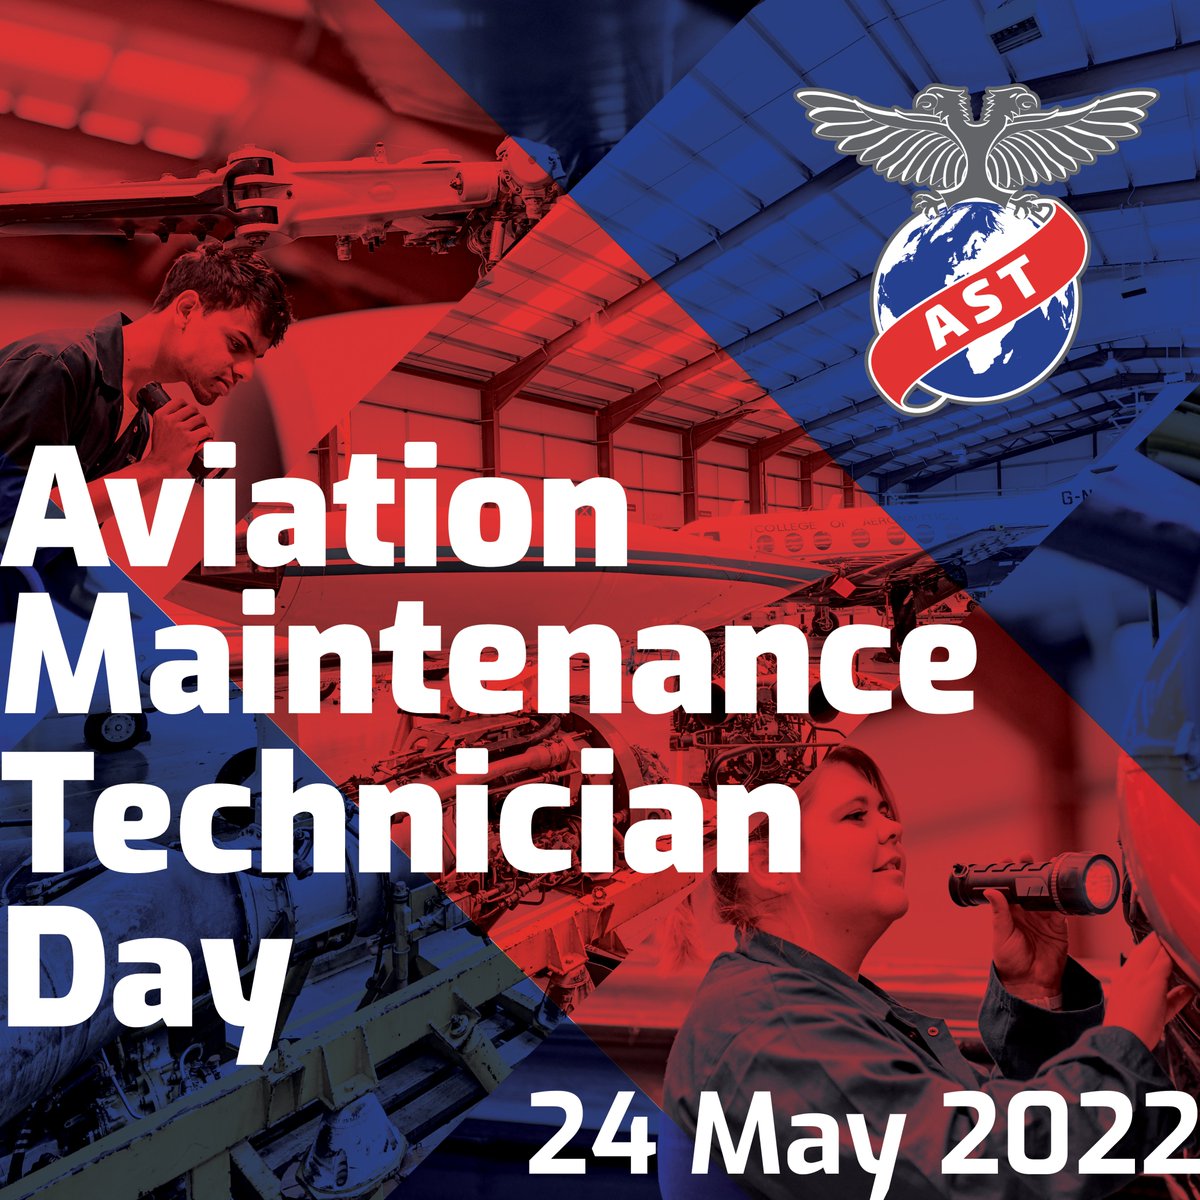 Happy Aviation Maintenance Technician Day! 

#AviationMaintenanceTechnicianDay #aircrafttechnician #aviation